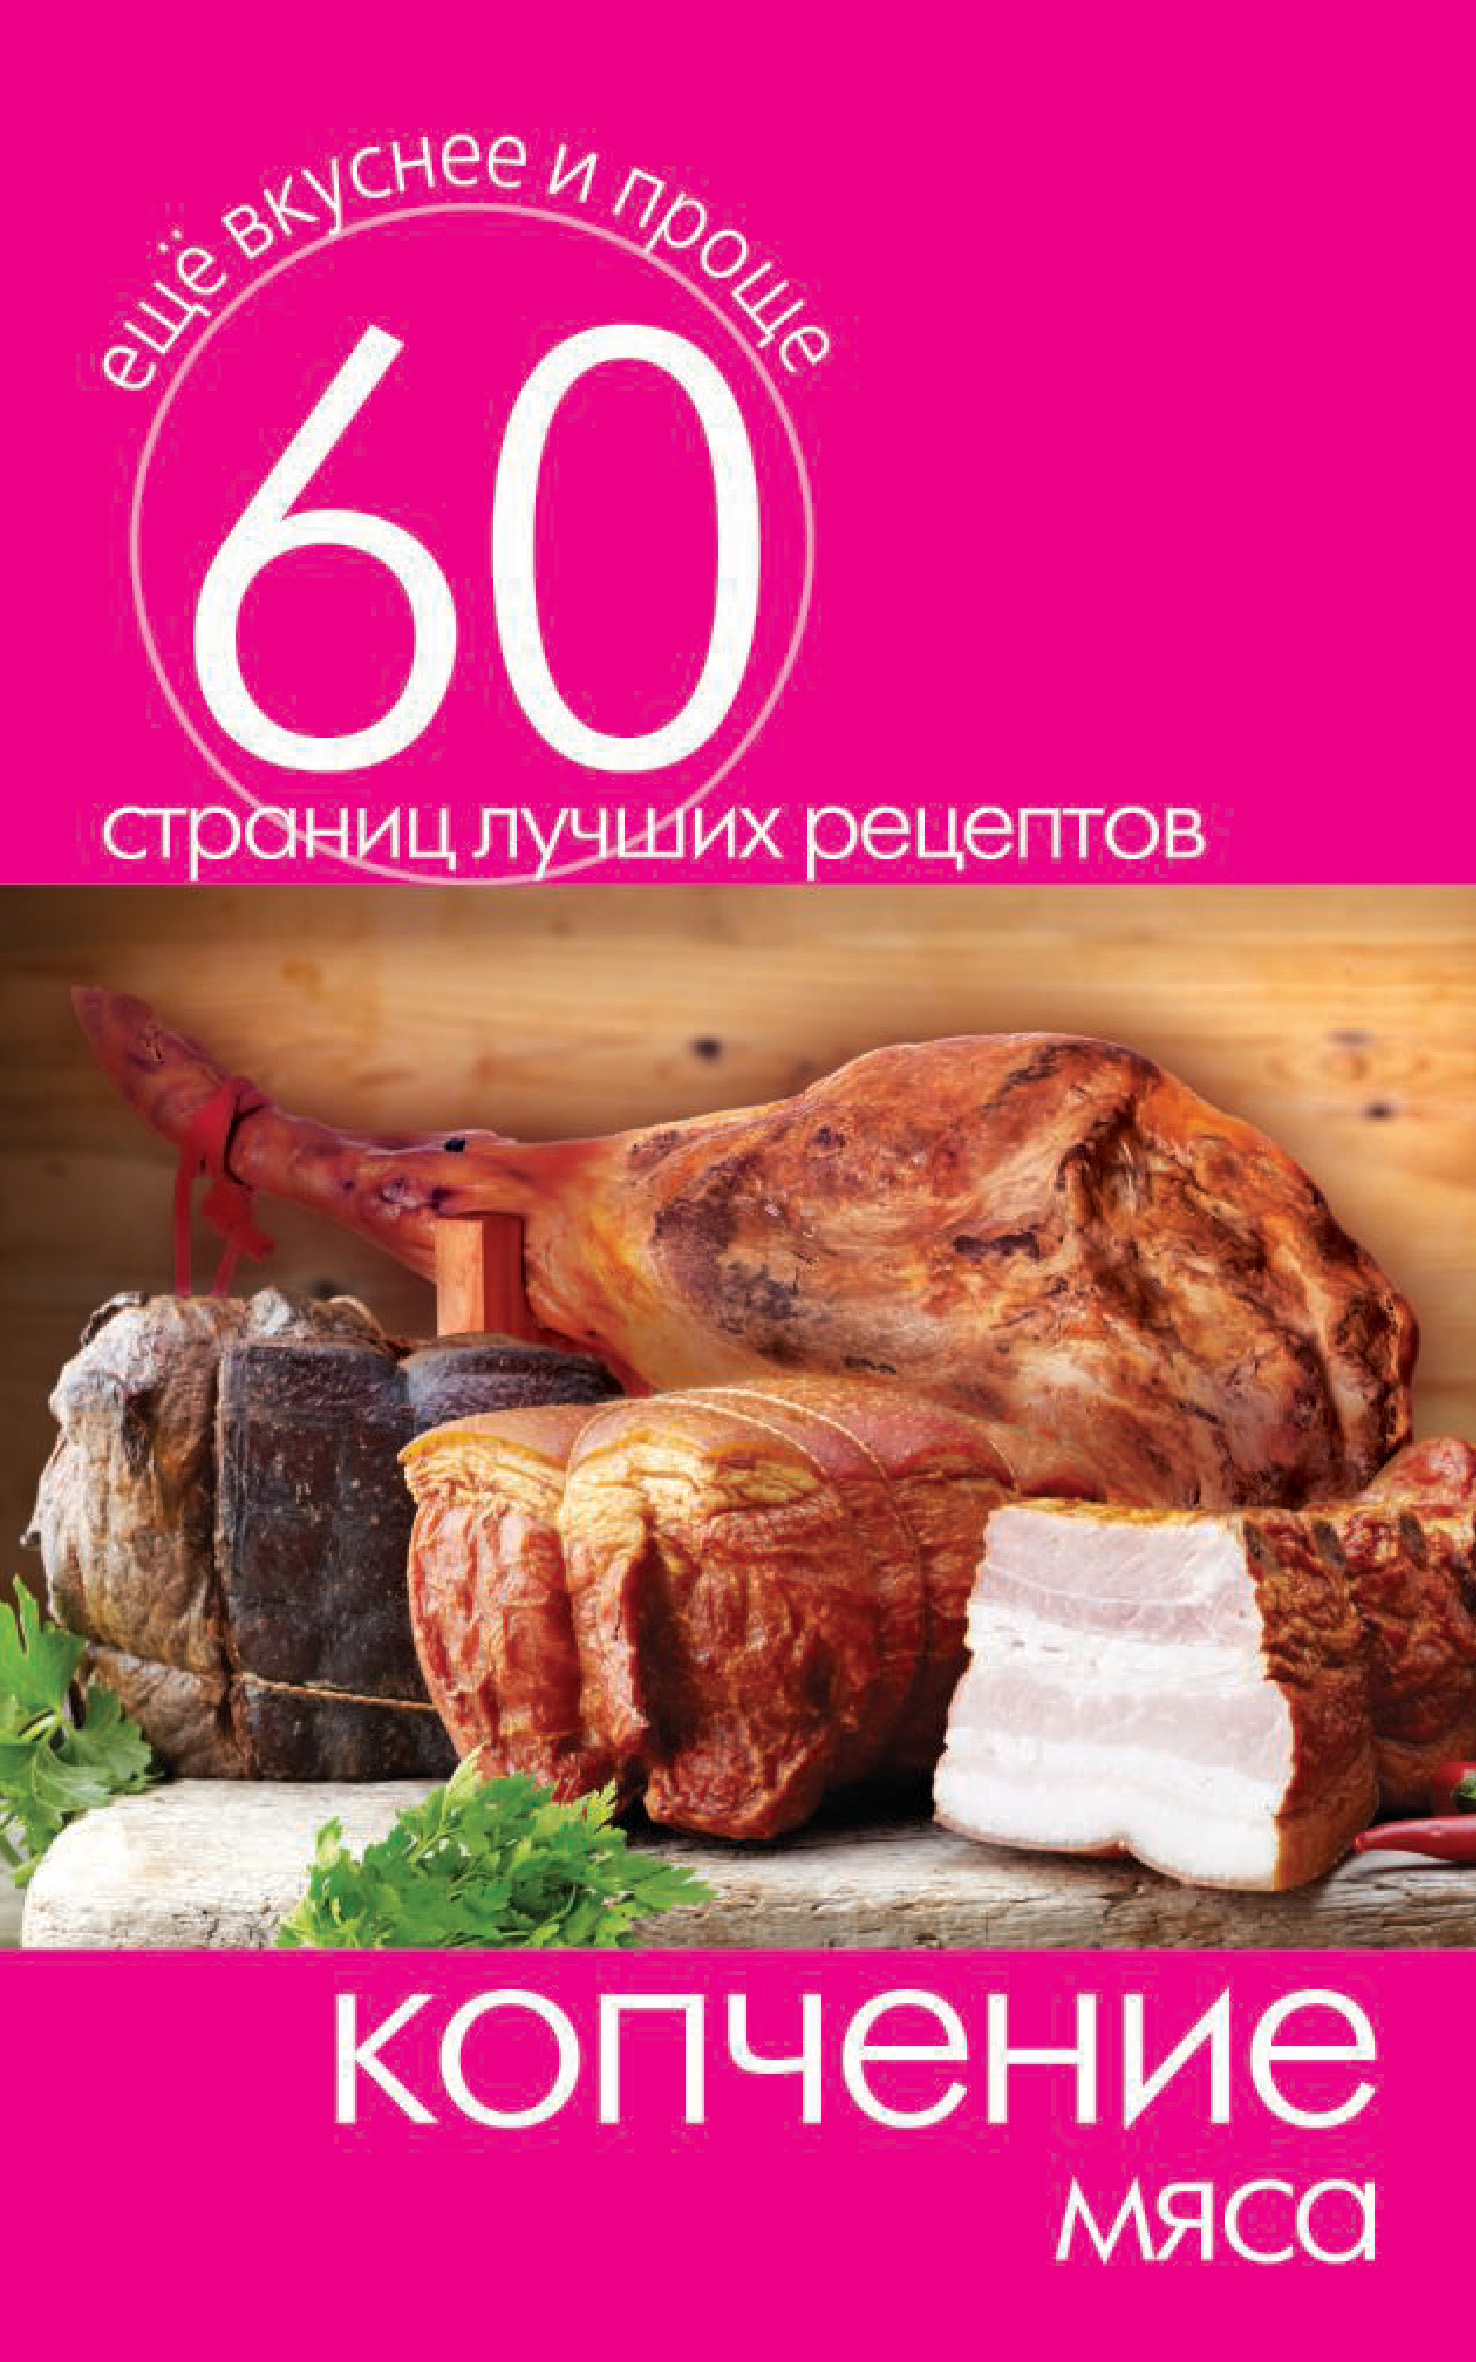 Книга Копчение мяса из серии Ещё вкуснее и проще, созданная Сергей Кашин, может относится к жанру Кулинария. Стоимость электронной книги Копчение мяса с идентификатором 8106766 составляет 29.00 руб.